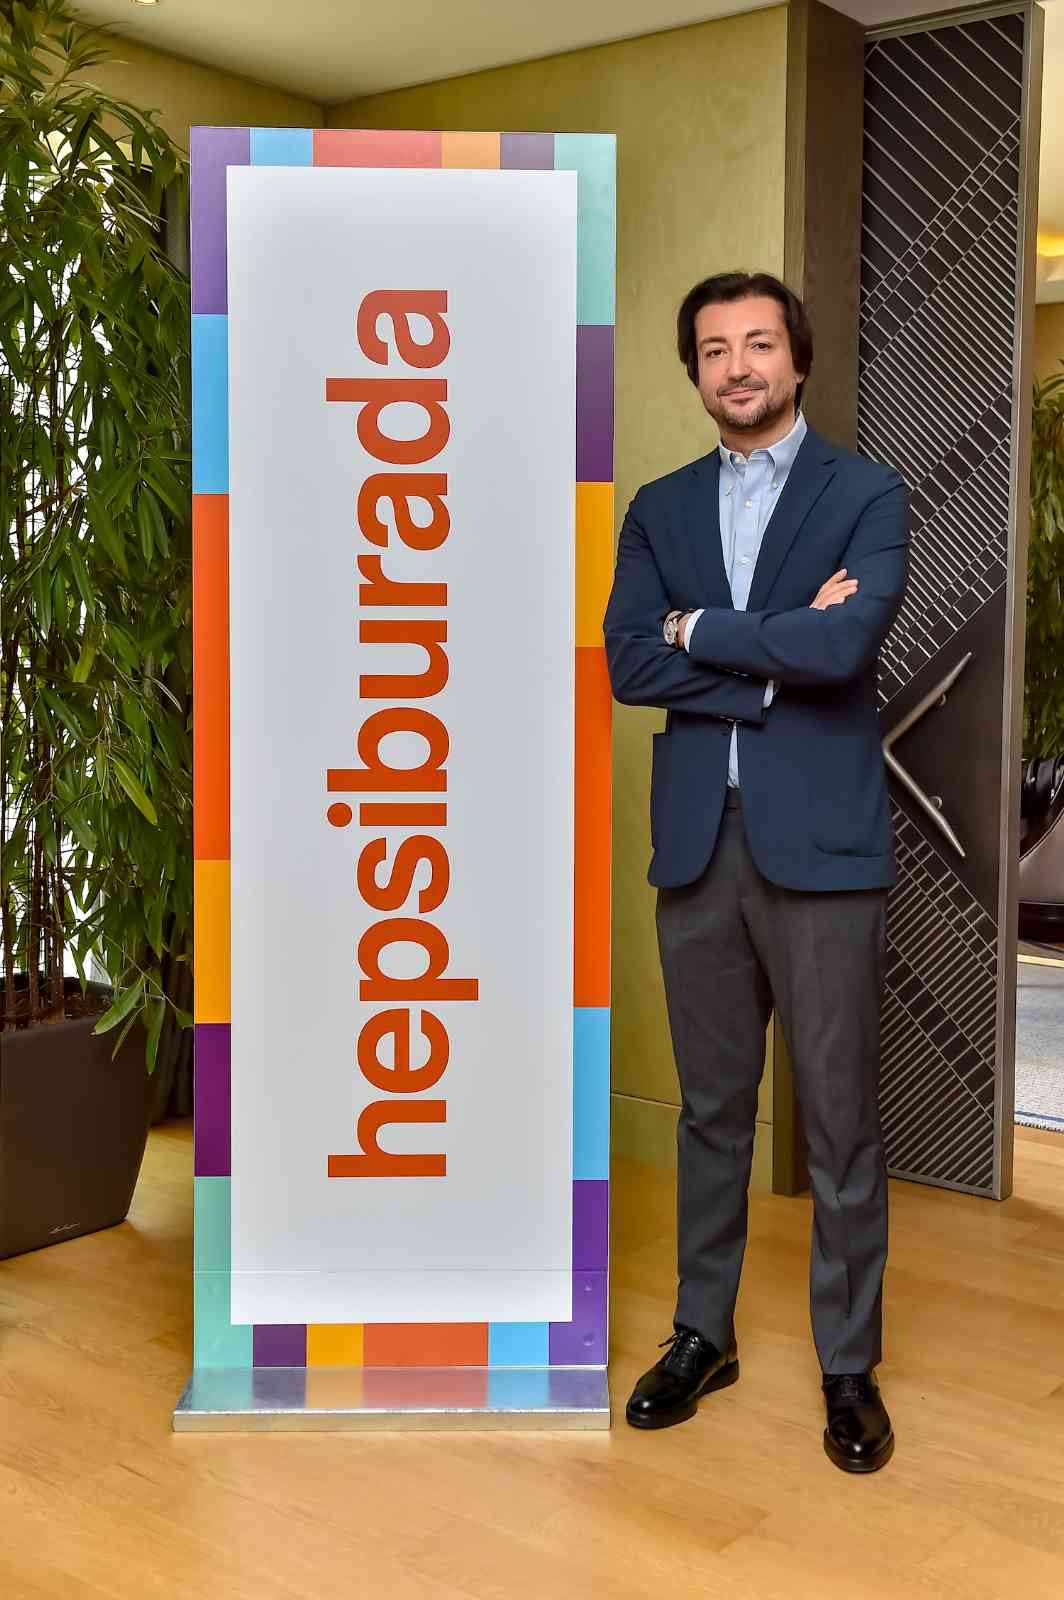 Türkiye’nin yerli sermayeli en büyük e-ticaret şirketlerinden Hepsiburada’nın CEO’su Murat Emirdağ, “Dünya teknoloji liginde bayrağımızı ...